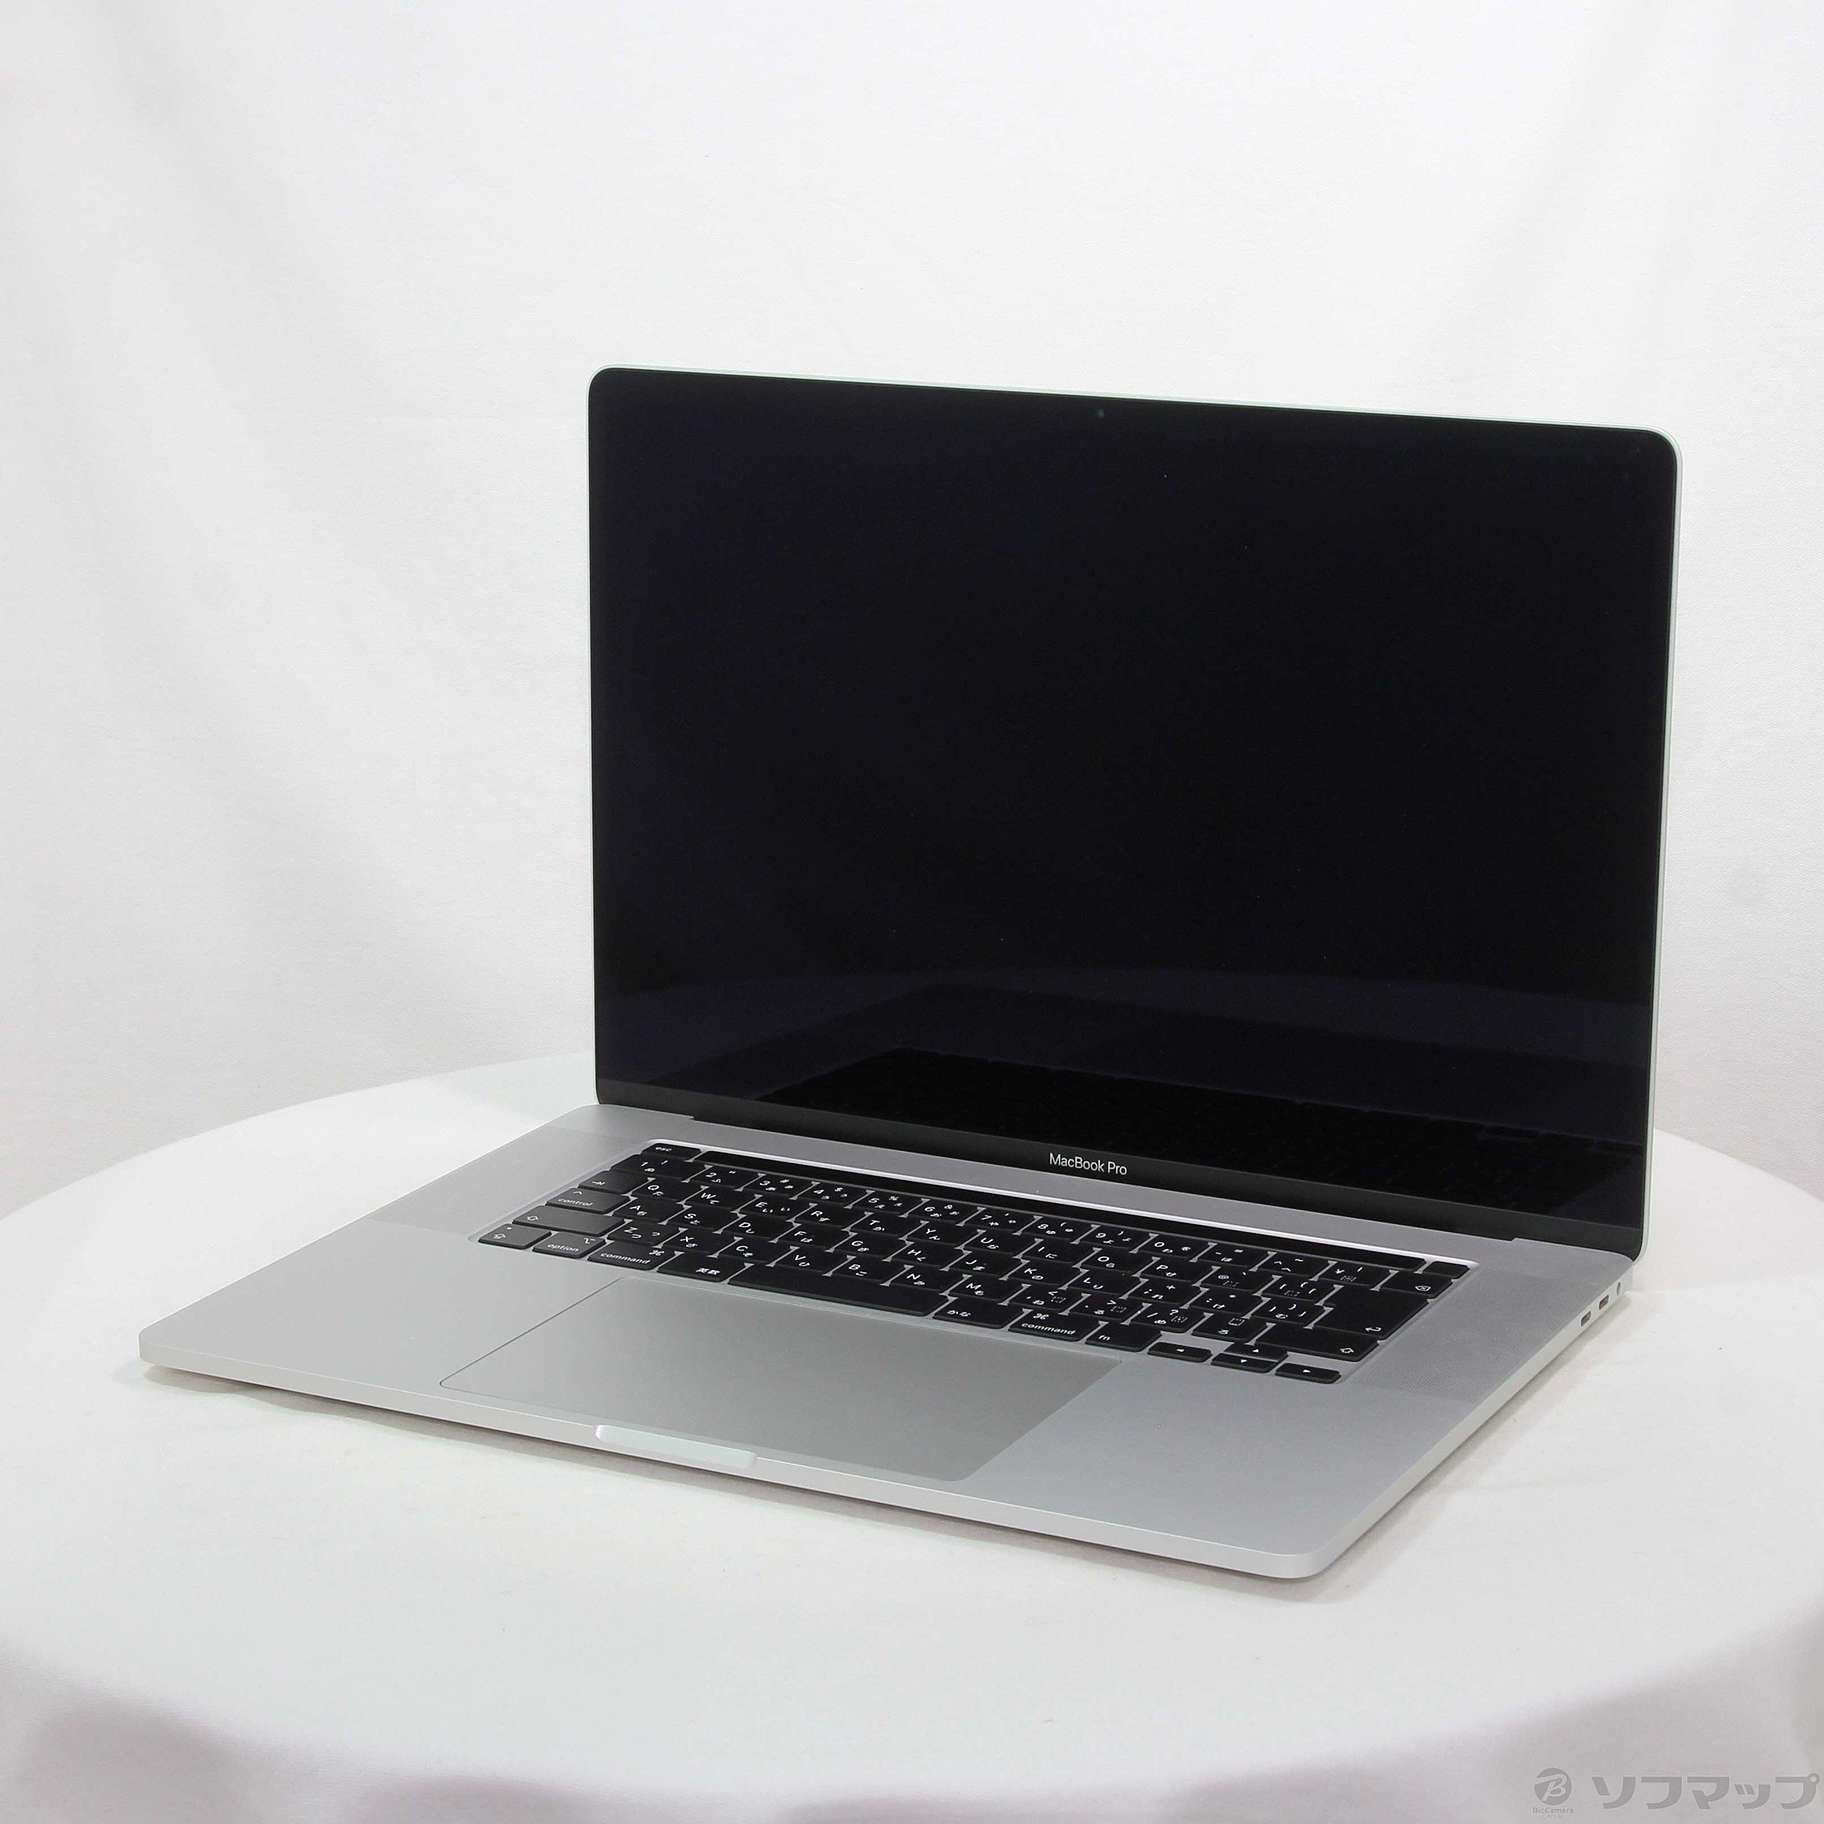 APPLE MacBook Pro シルバー2019